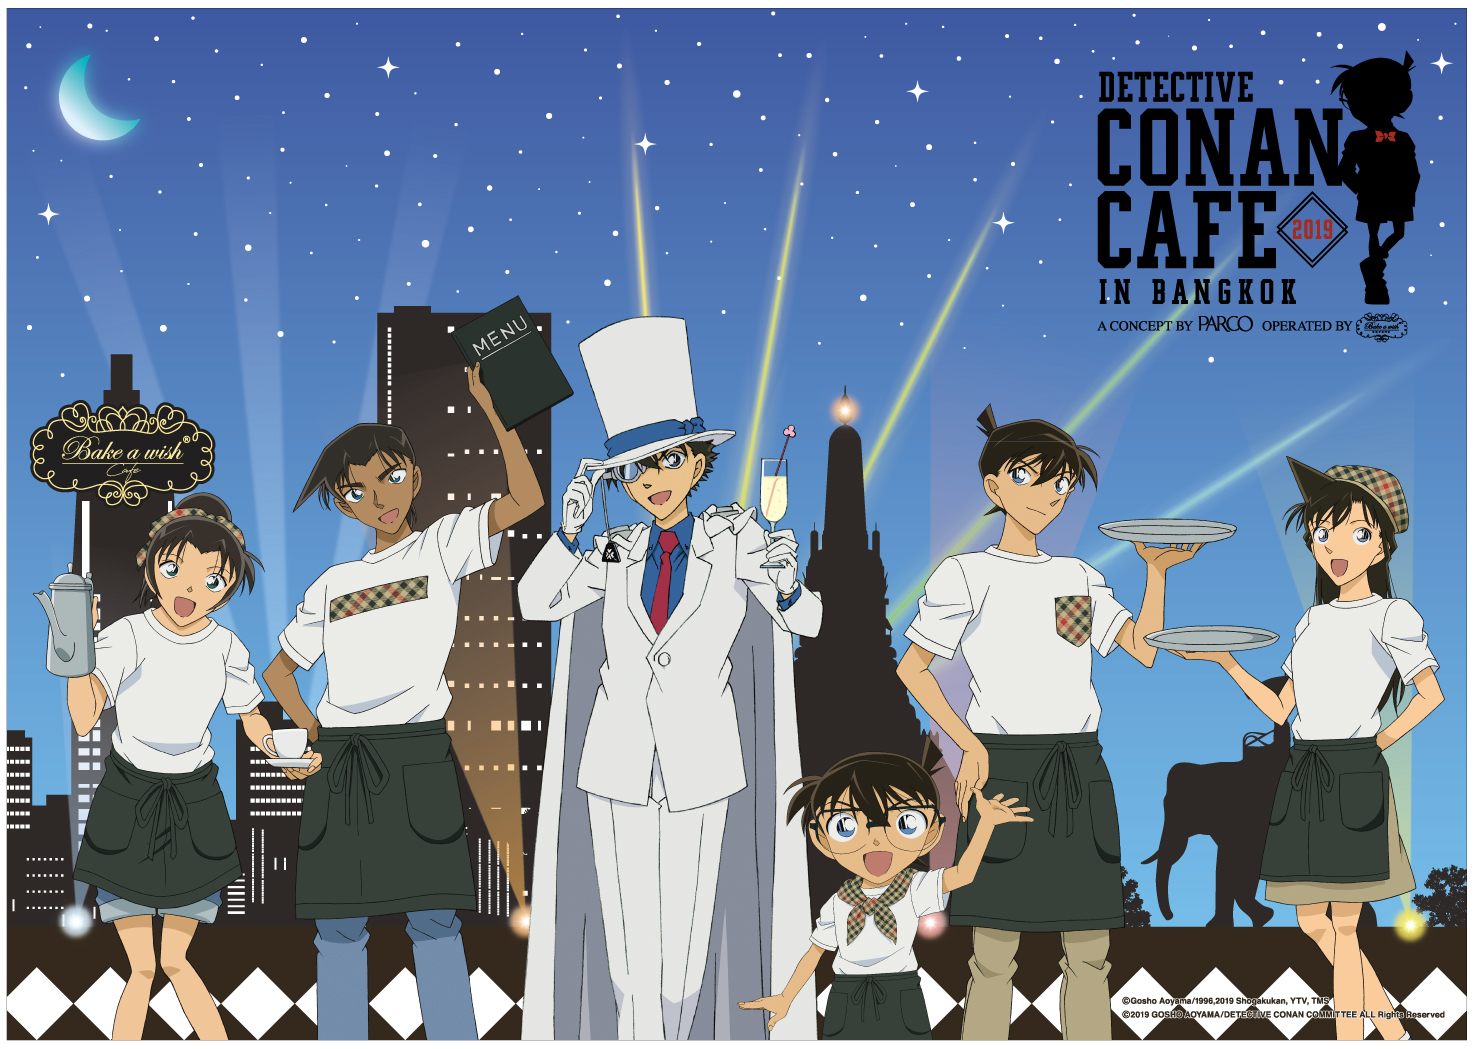 パルコプロデュースのキャラクターカフェ海外展開第５弾 名探偵コナンカフェ Detective Conan Cafe In Bangkok 開催 株式会社パルコのプレスリリース